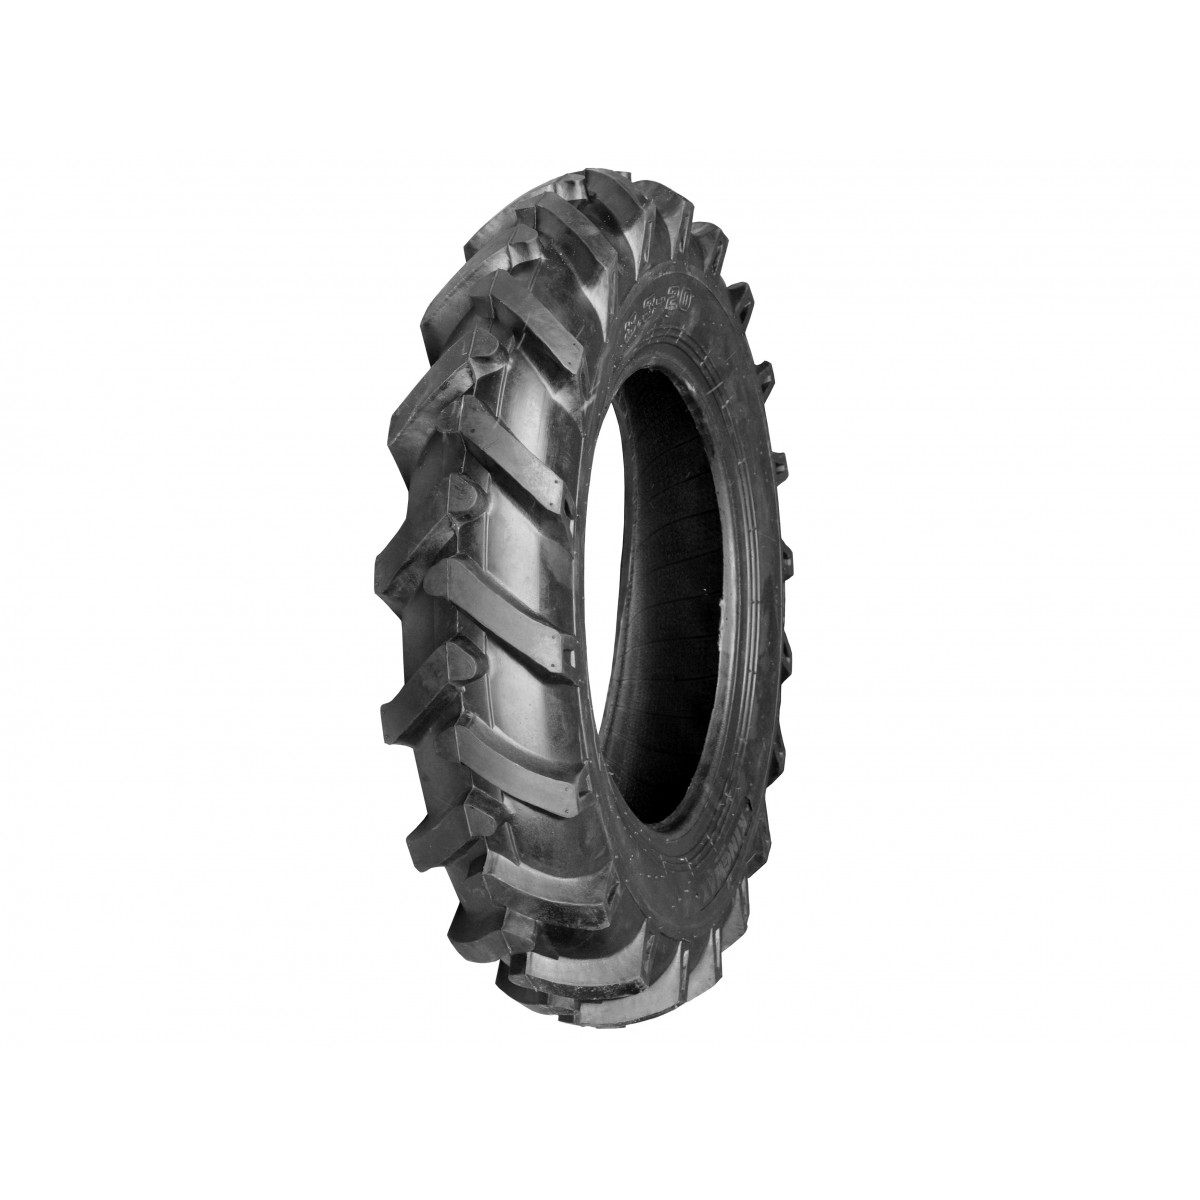 Agricultural tire 8.30-20 8PR 8.3-20 8.3x20 Fir